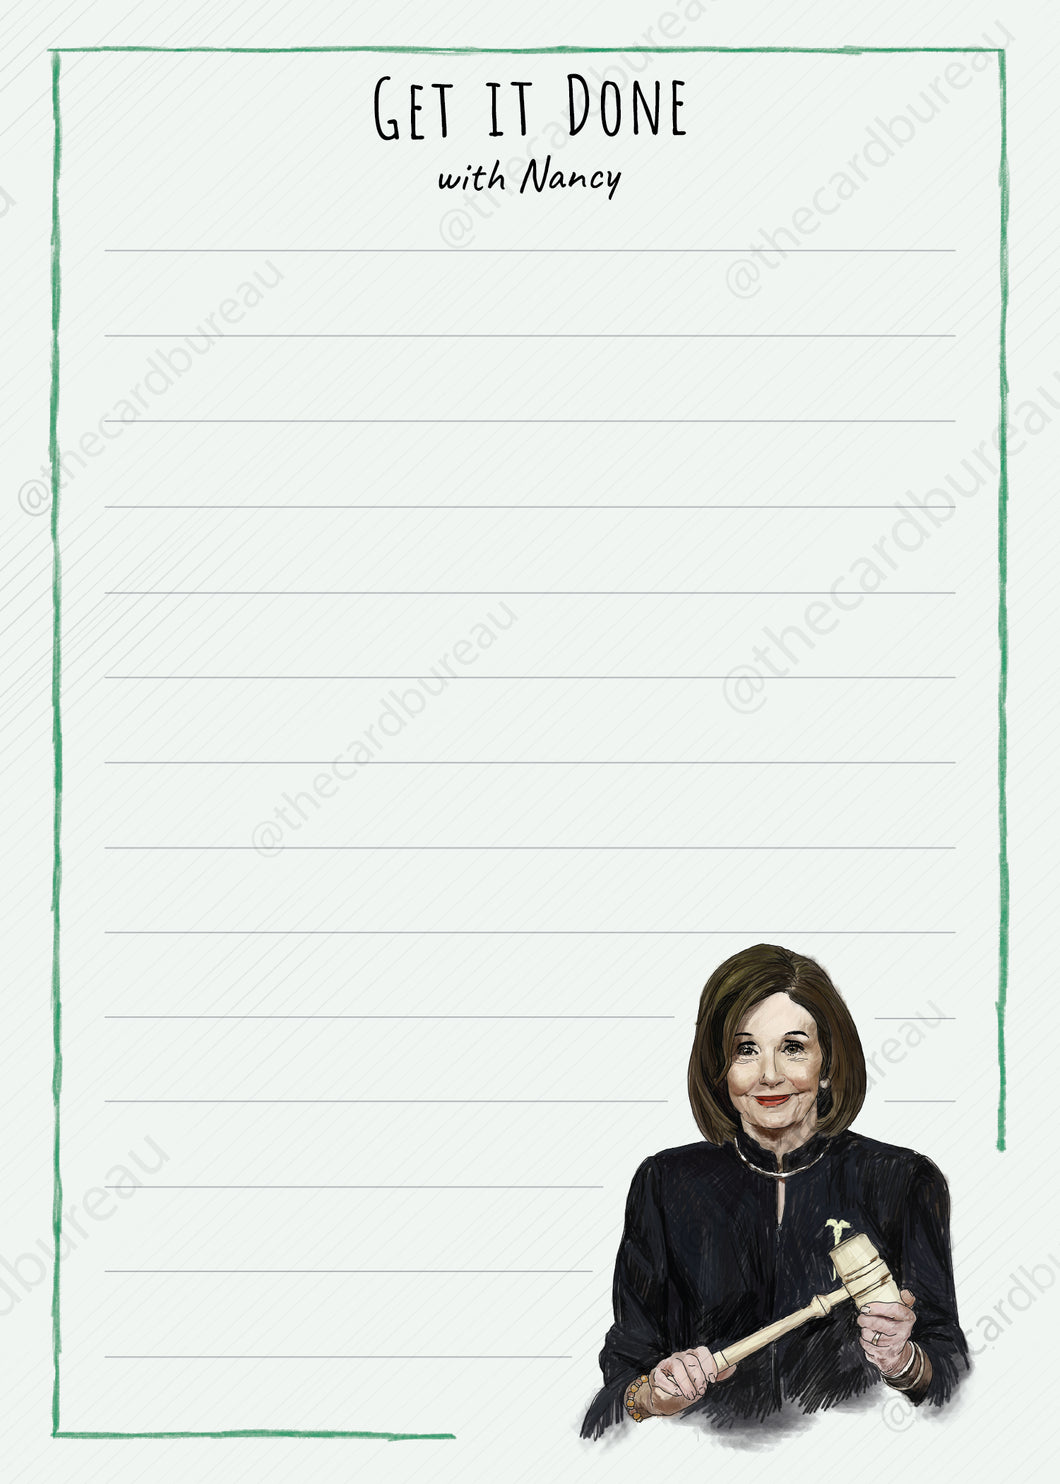 Nancy Pelosi Get it Done Notepad